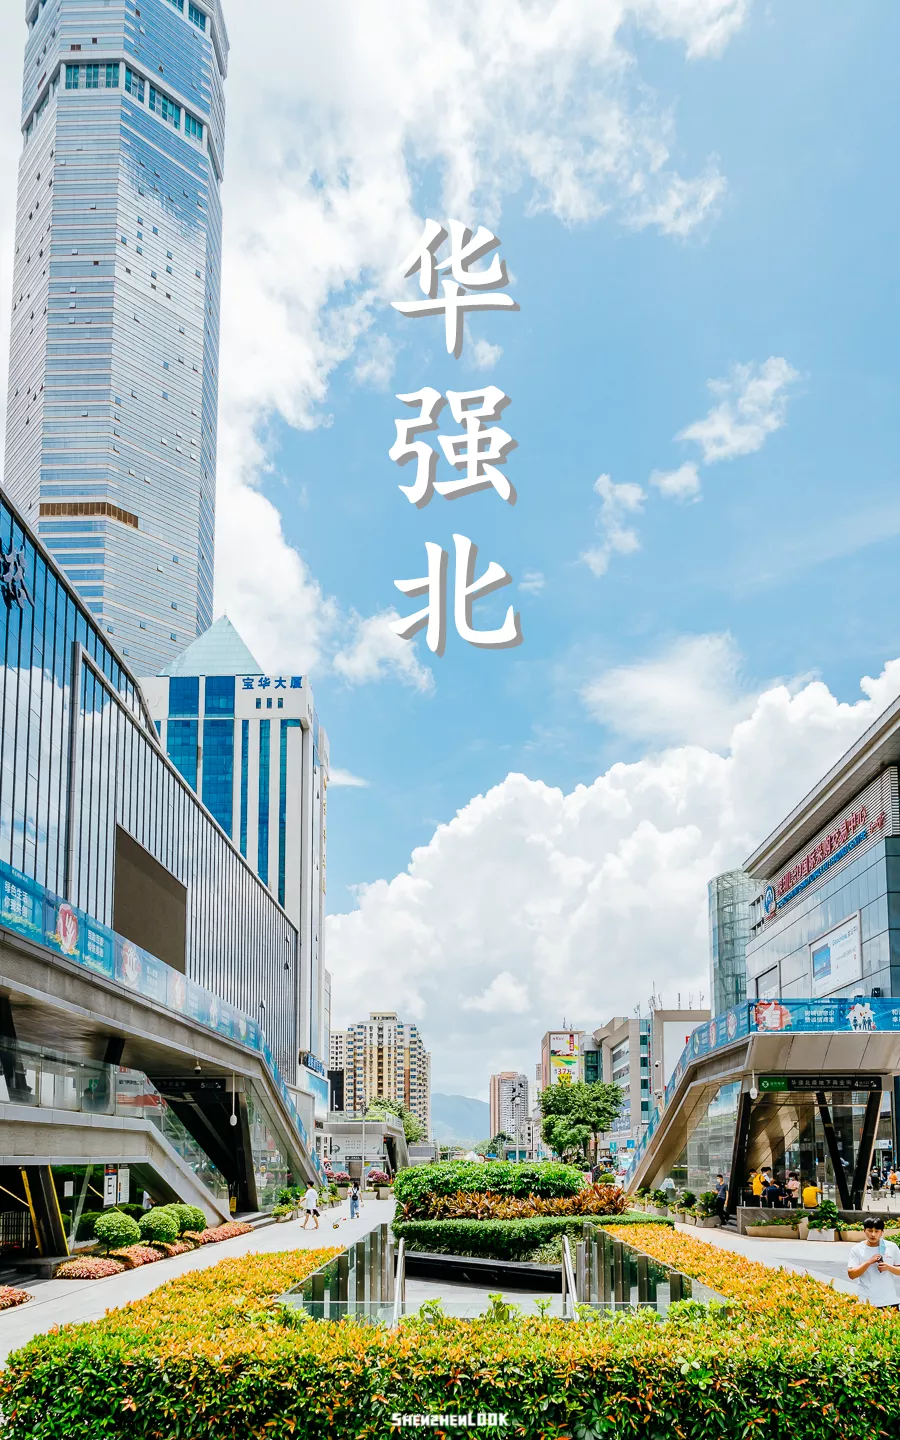 深圳最大的电子商城 深圳华强北电子市场